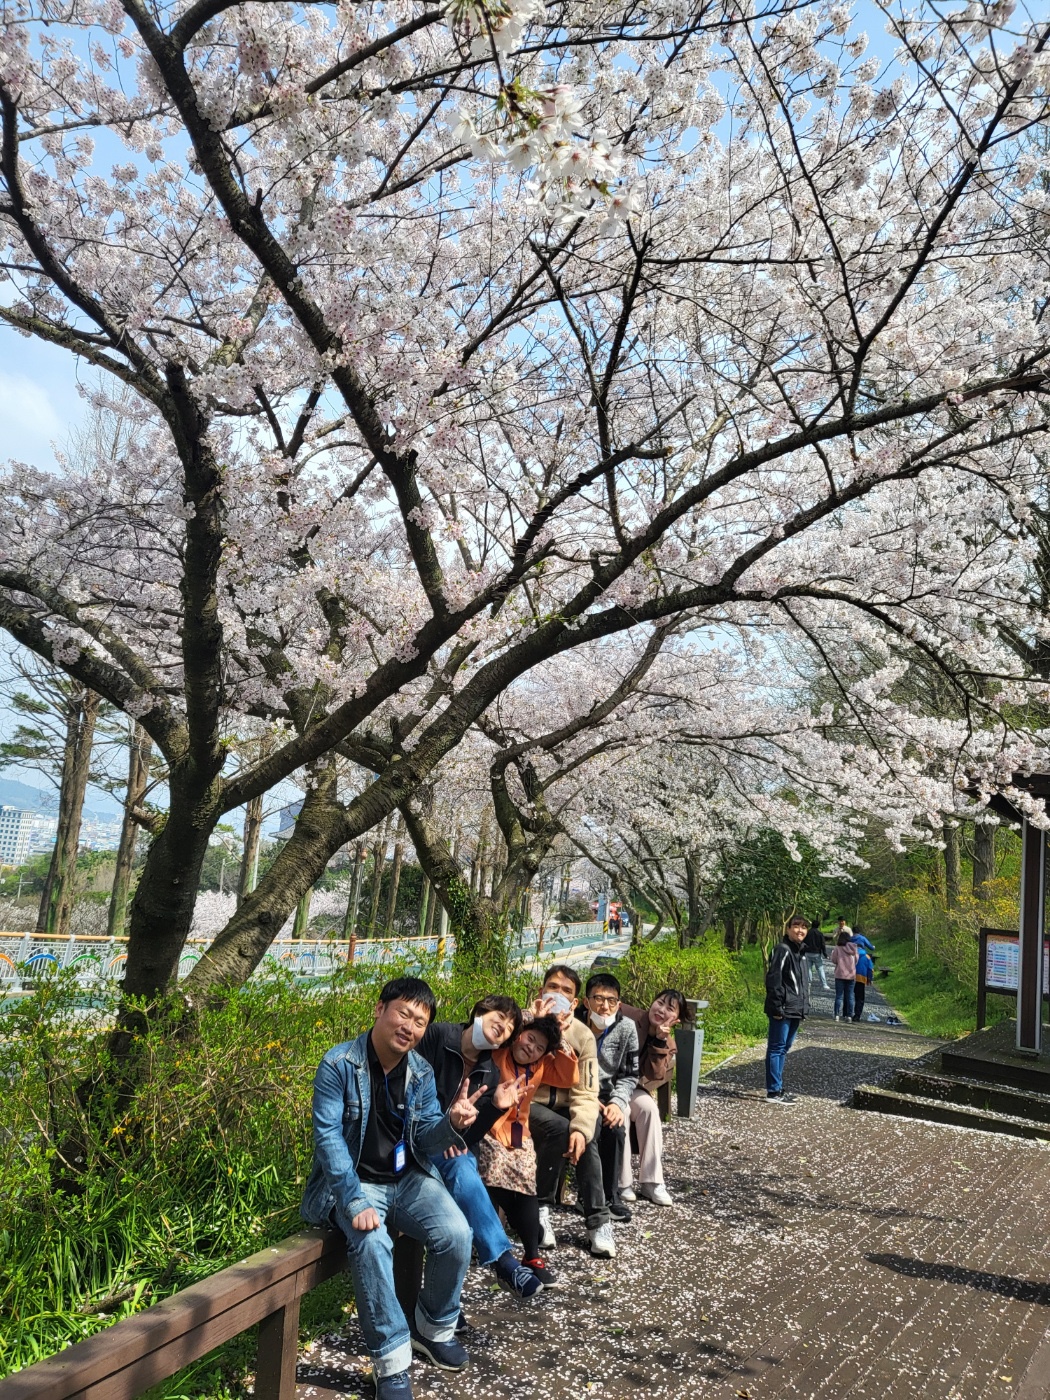 만개한 벚꽃을 배경으로 이용인과 교사가 벤치에 앉아 함께 찍은 사진입니다.